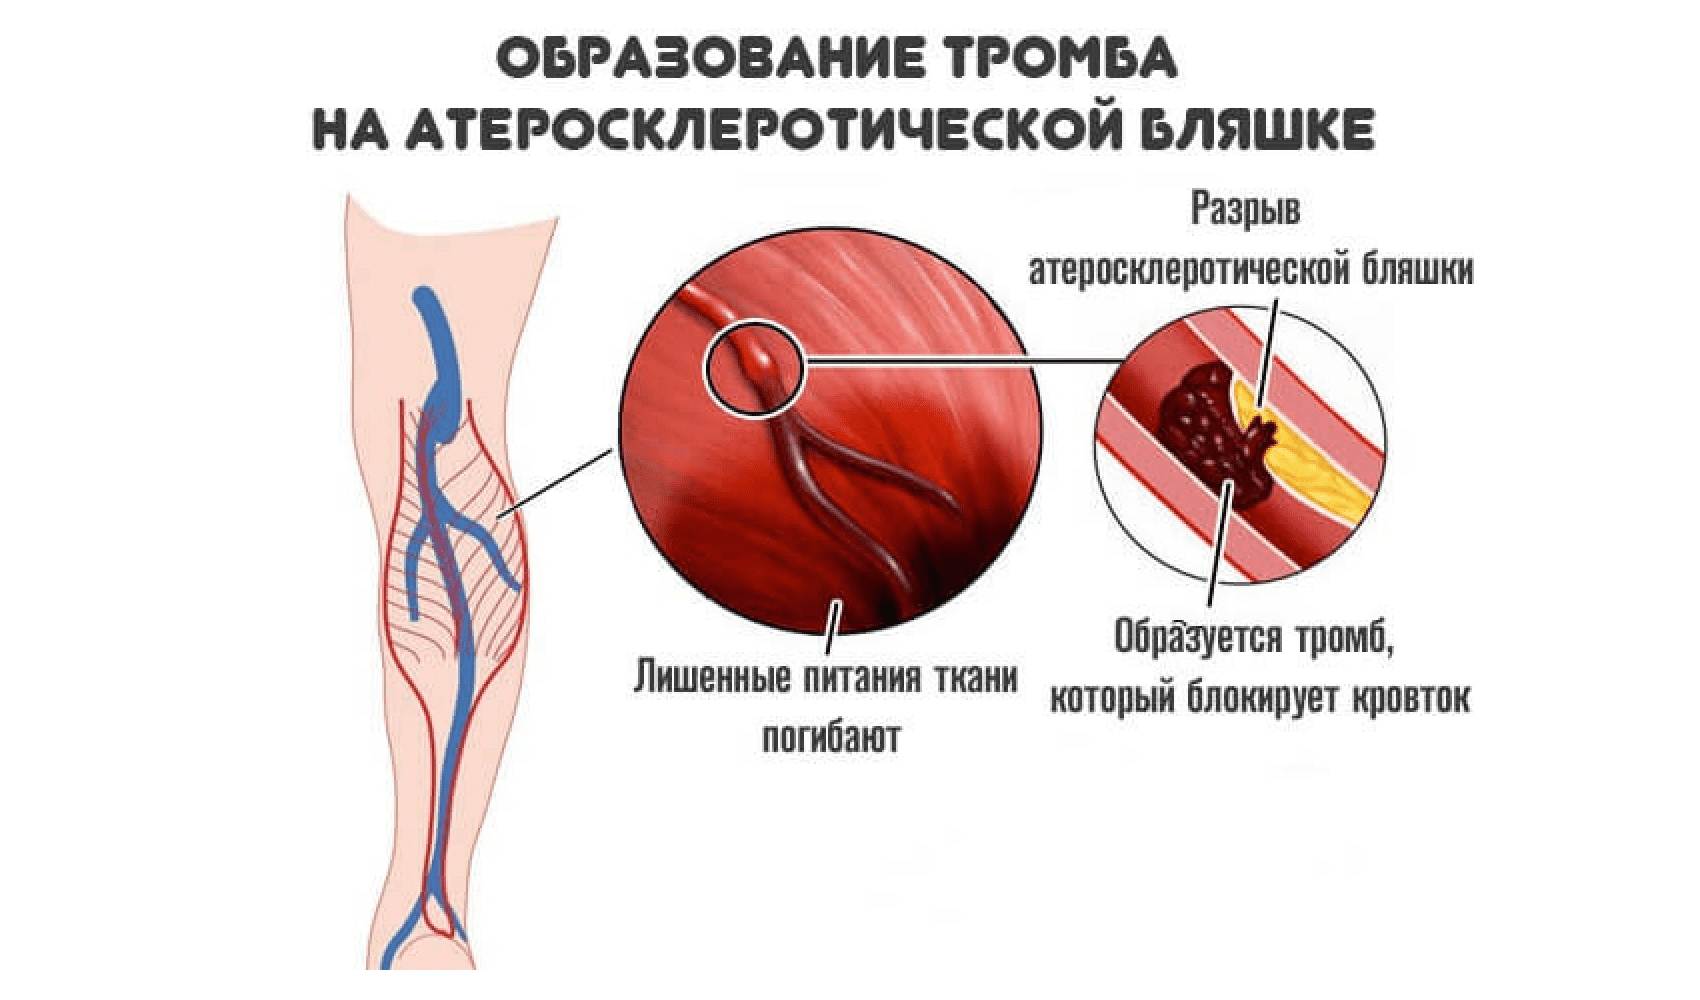 Причины возникновения тромбоза. Образование тромбов в артериях. Атеросклеротическая бляшка и тромб.